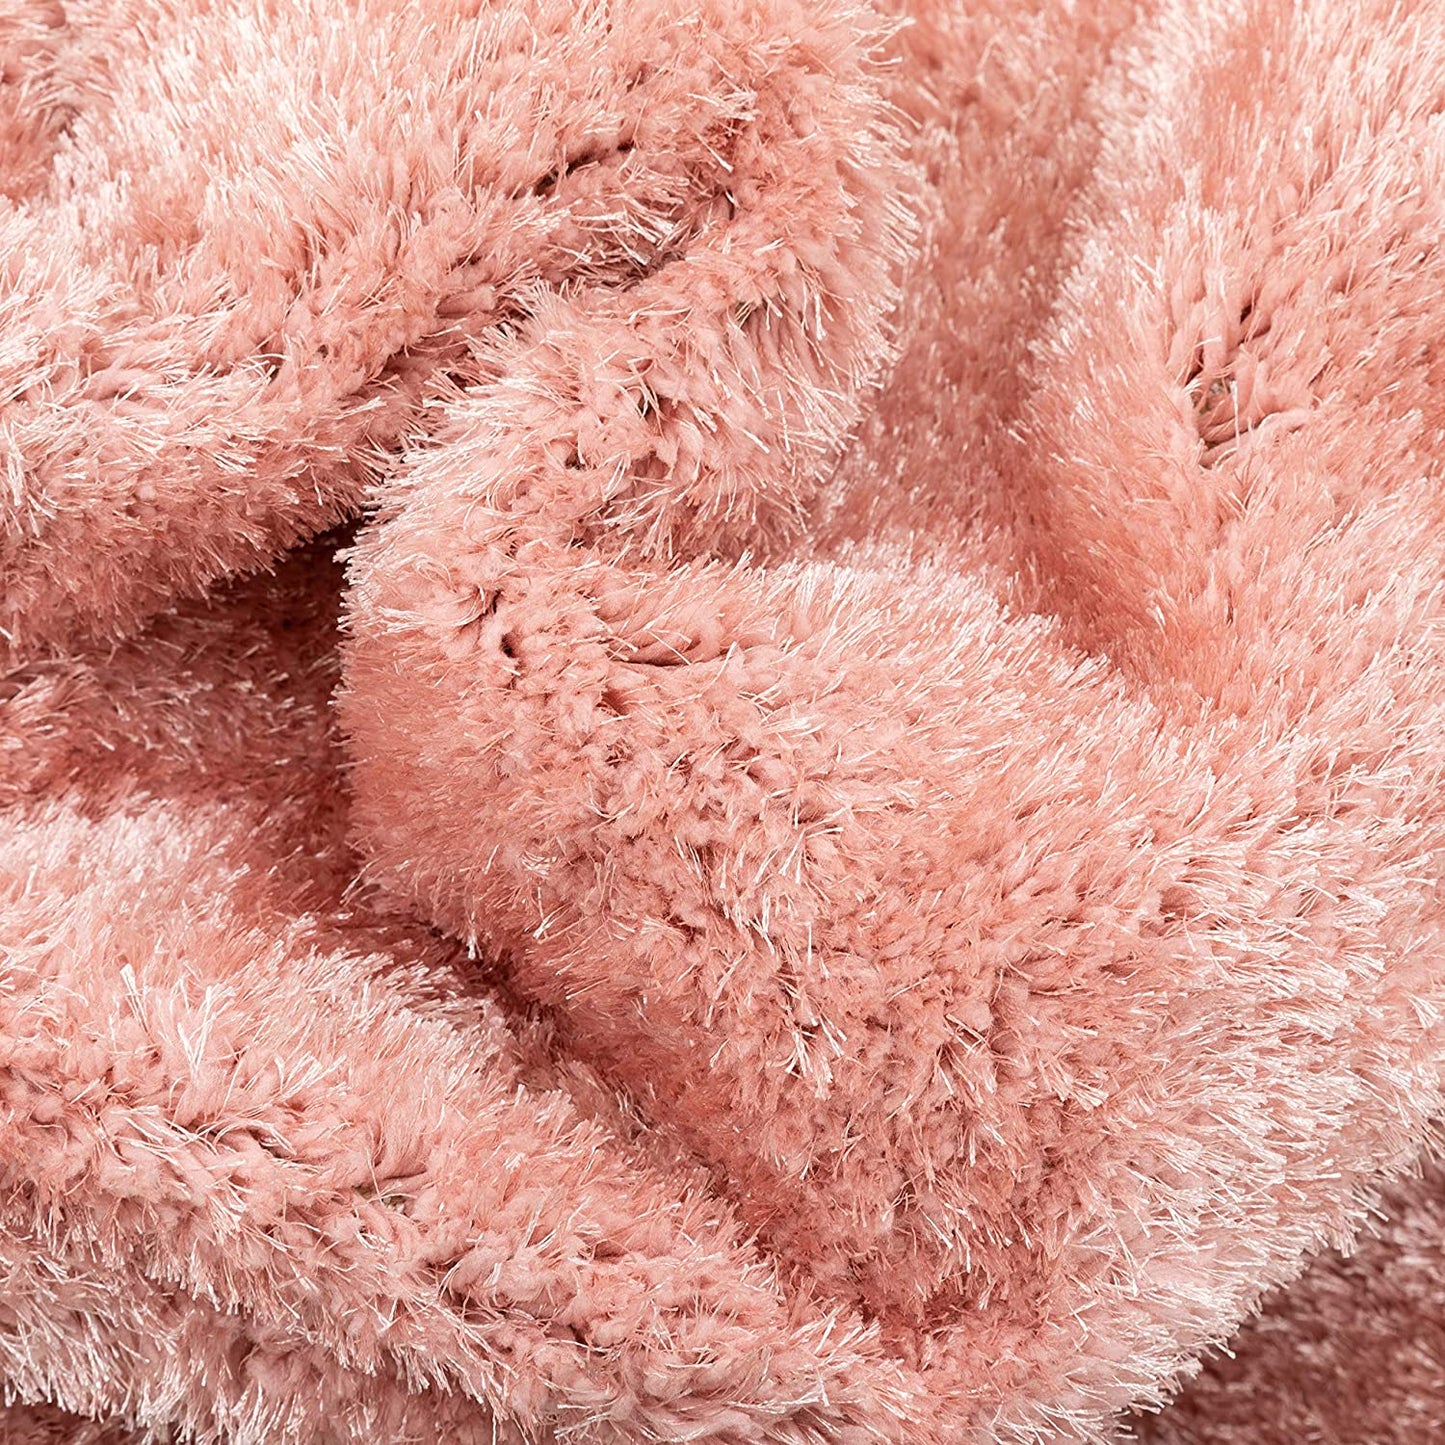 Ciel Blush Pink Ultra-Soft Multi-Textured Shimmer Pile Area Rug